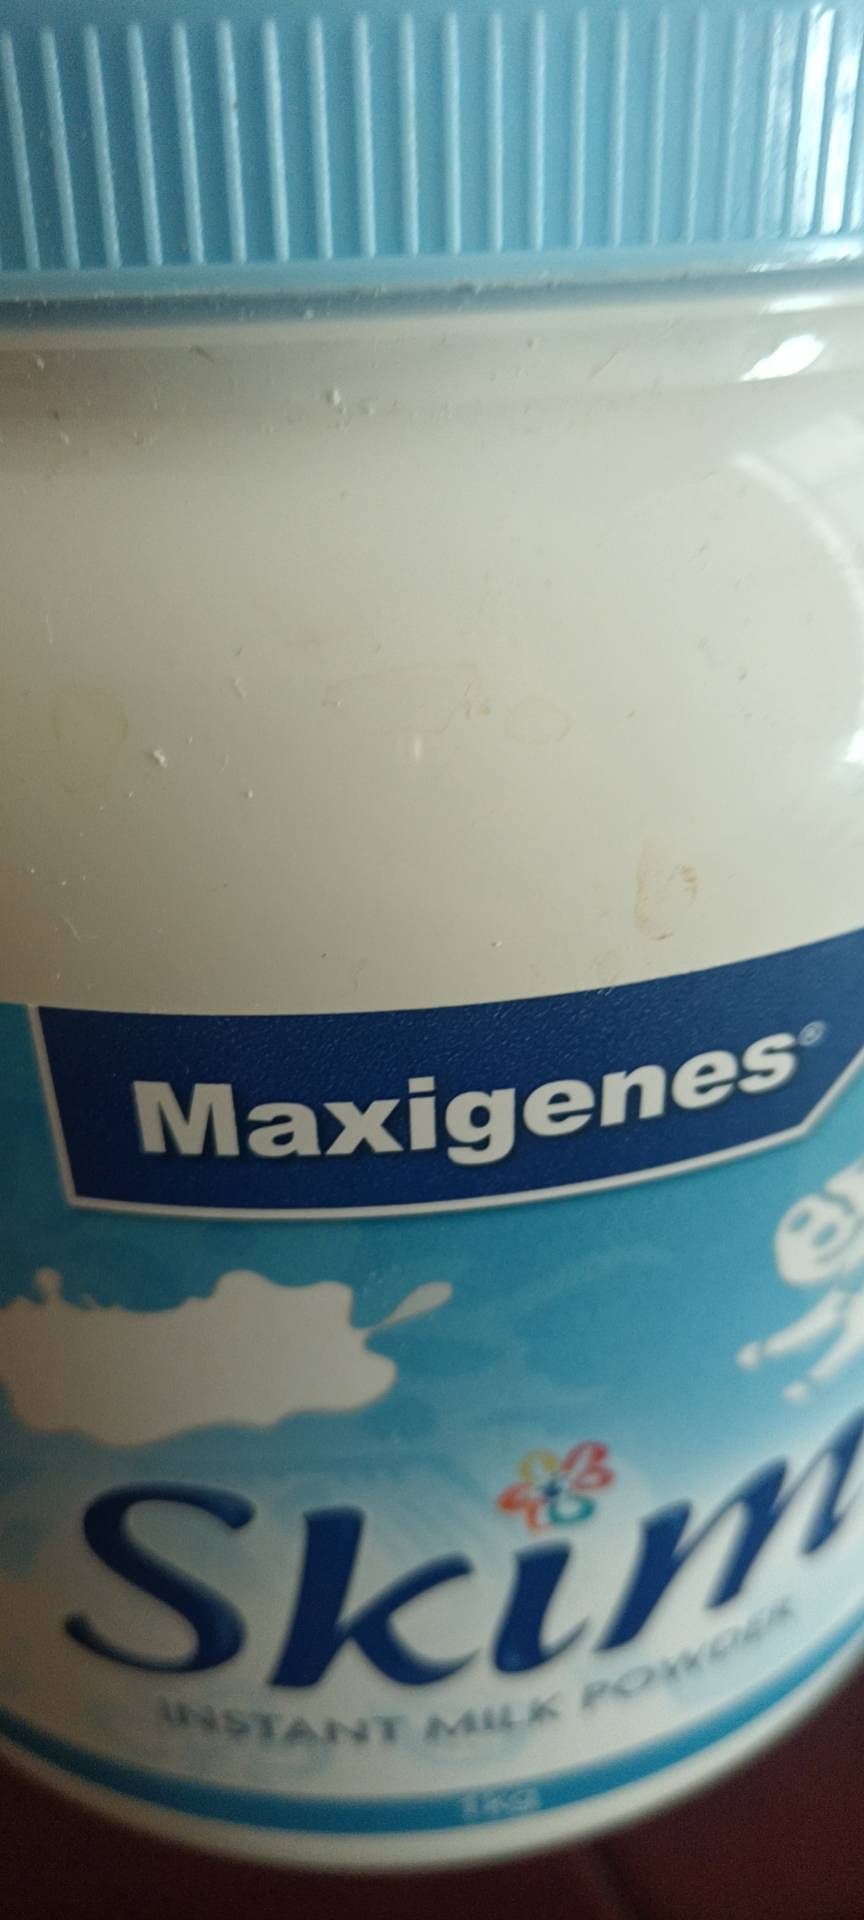 有效期到25年2月-三罐装 | 美可卓(Maxigenes)脱脂高钙成人奶粉 1kg罐 进口奶粉 蓝妹子 澳大利亚晒单图